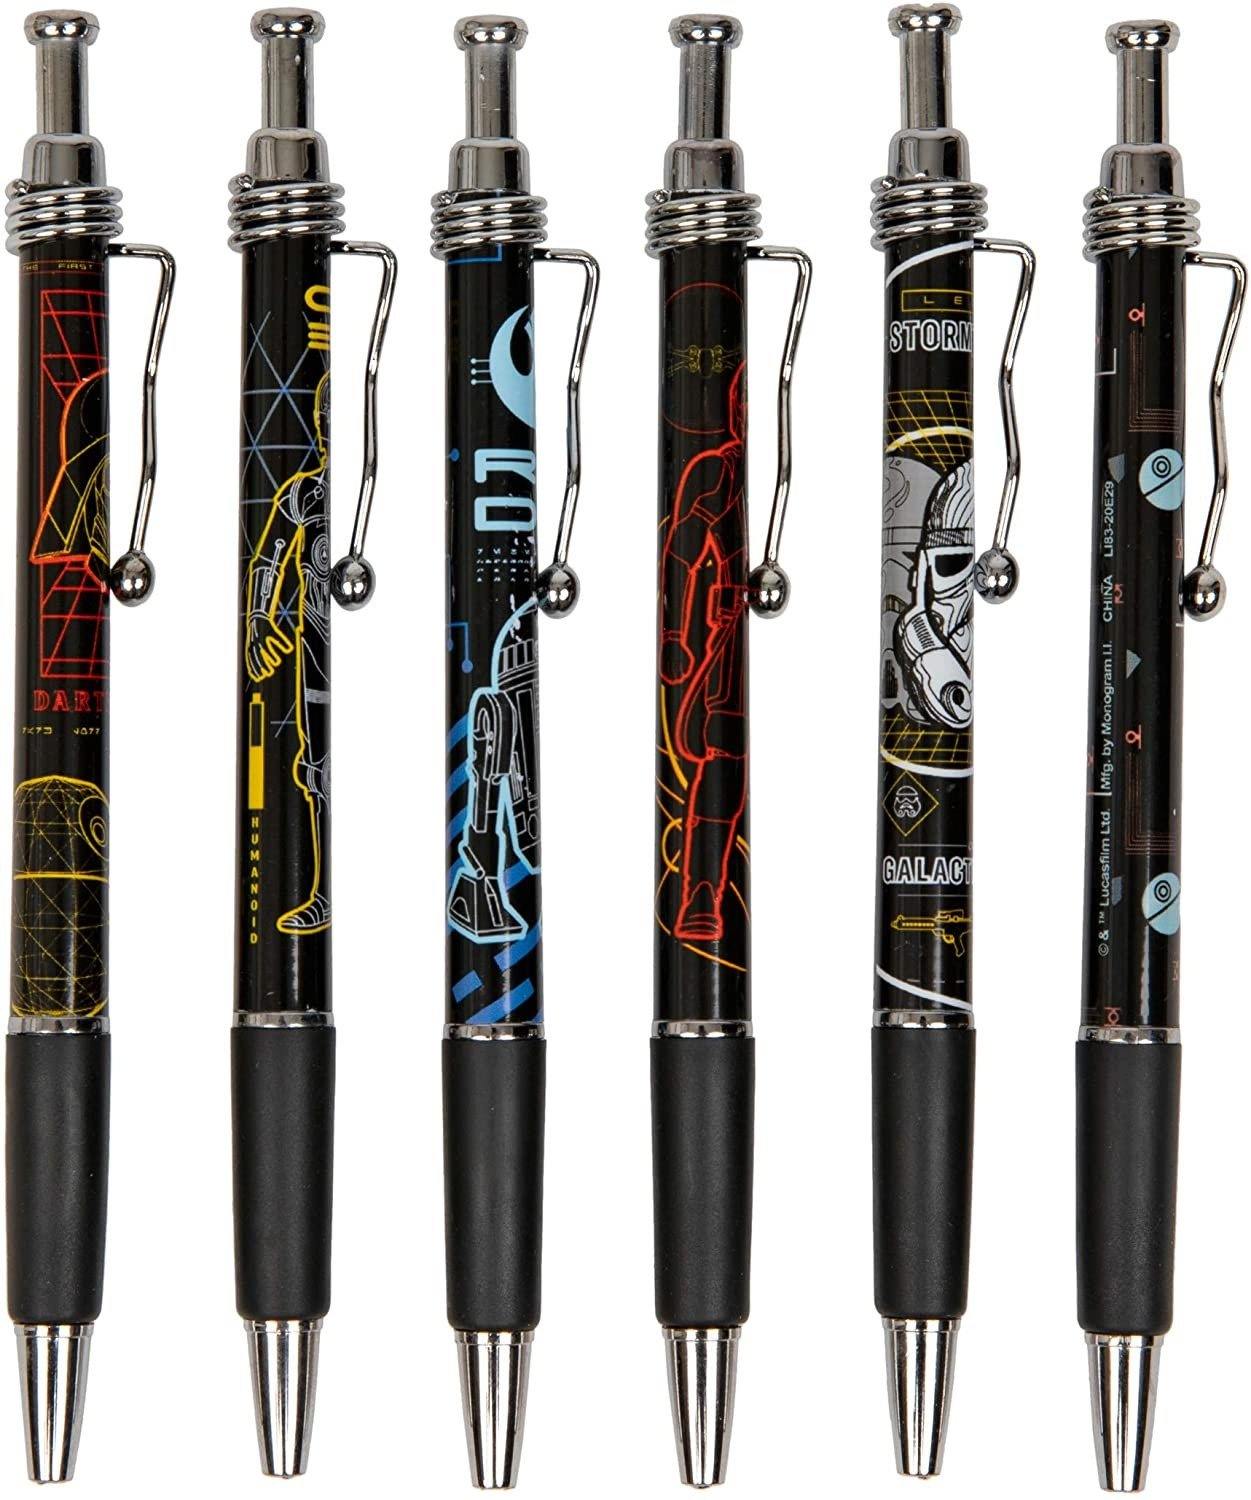 Star Wars Jazz Pens - Pack of 6 Pens